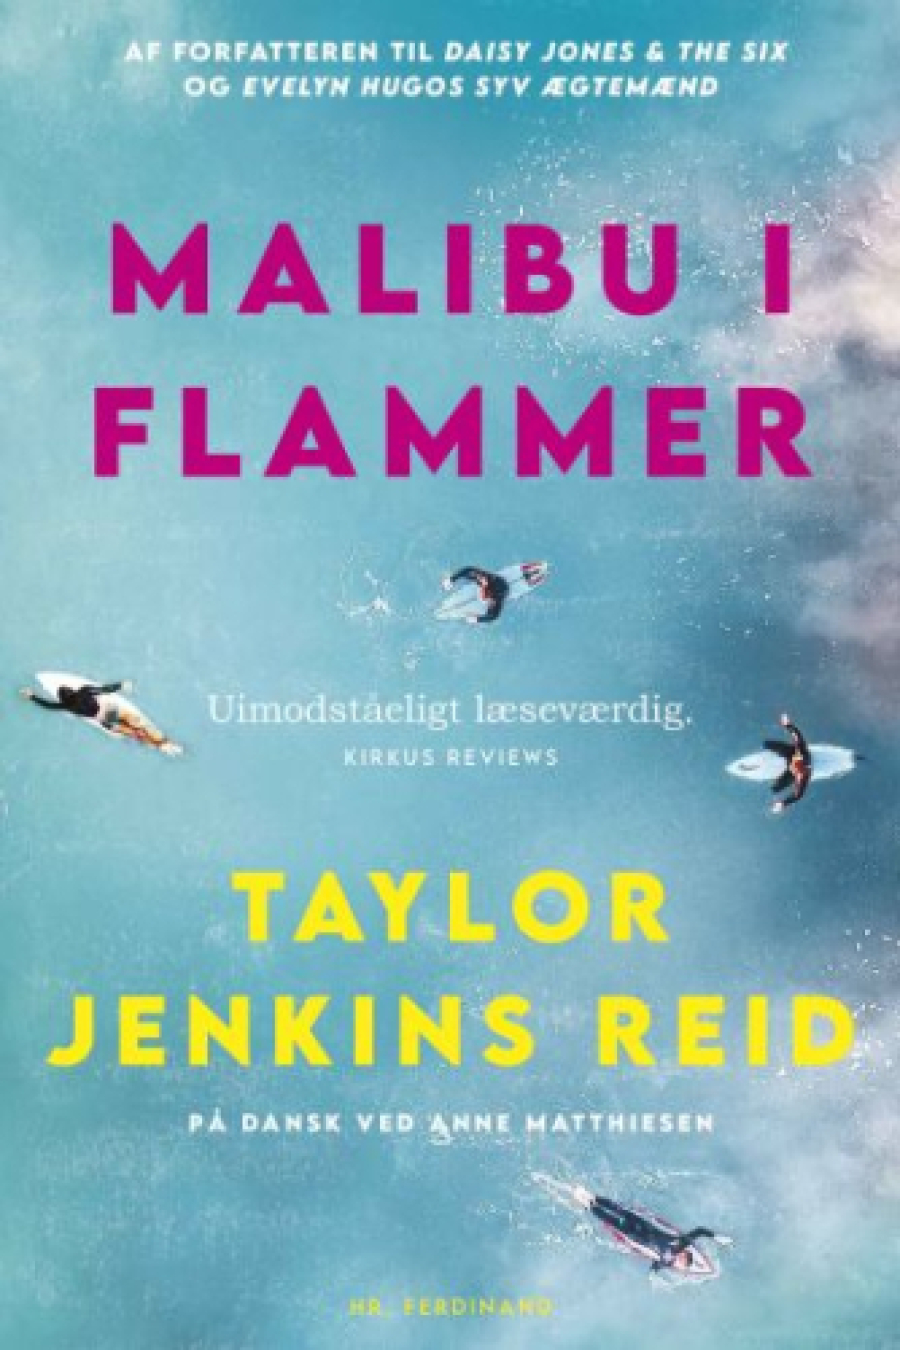 Malibu i flammer af Taylor Jenkins Reid